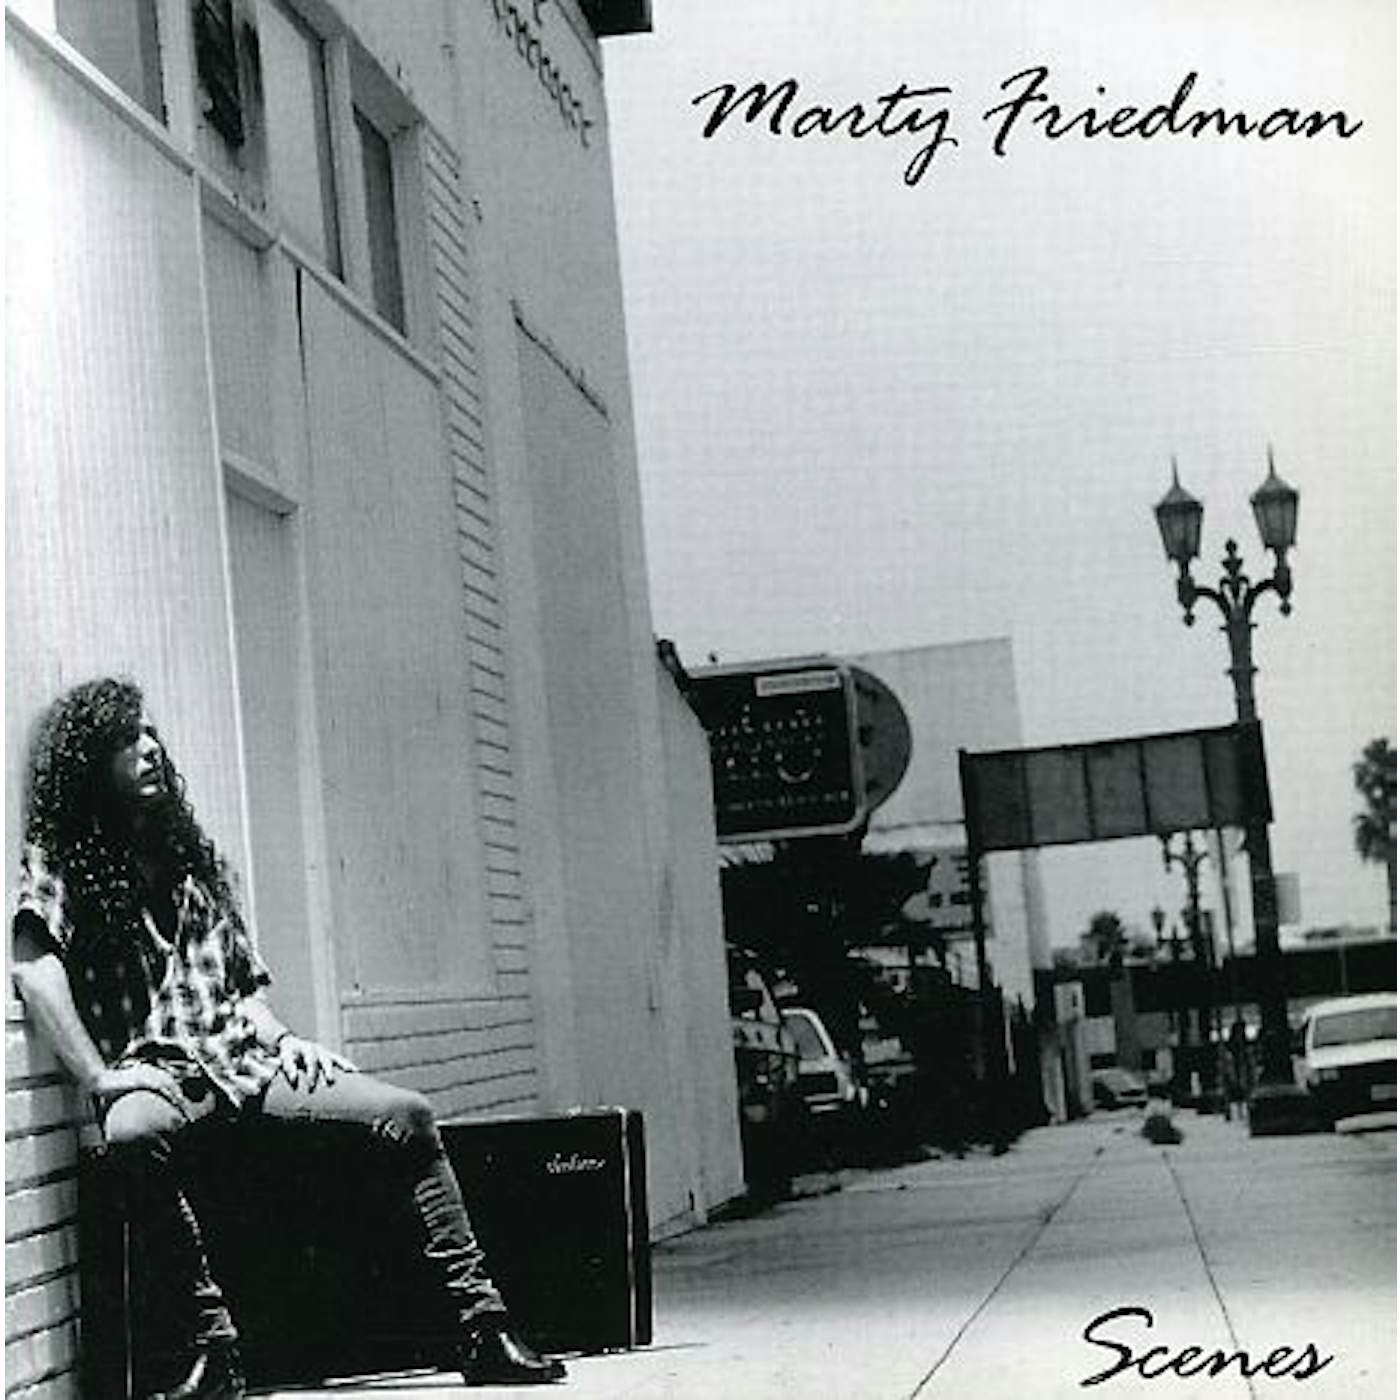 Marty Friedman SCENES CD